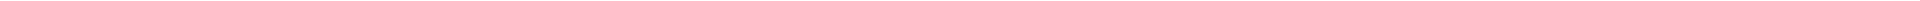 Элайнеры - цены на капы для выравнивания (исправления) прикуса, цены в Астане (Нур-Султан), Алматы, Атырау, Усть-Каменогорск, Уральск, Кокшетау в Казахстане, фото 18